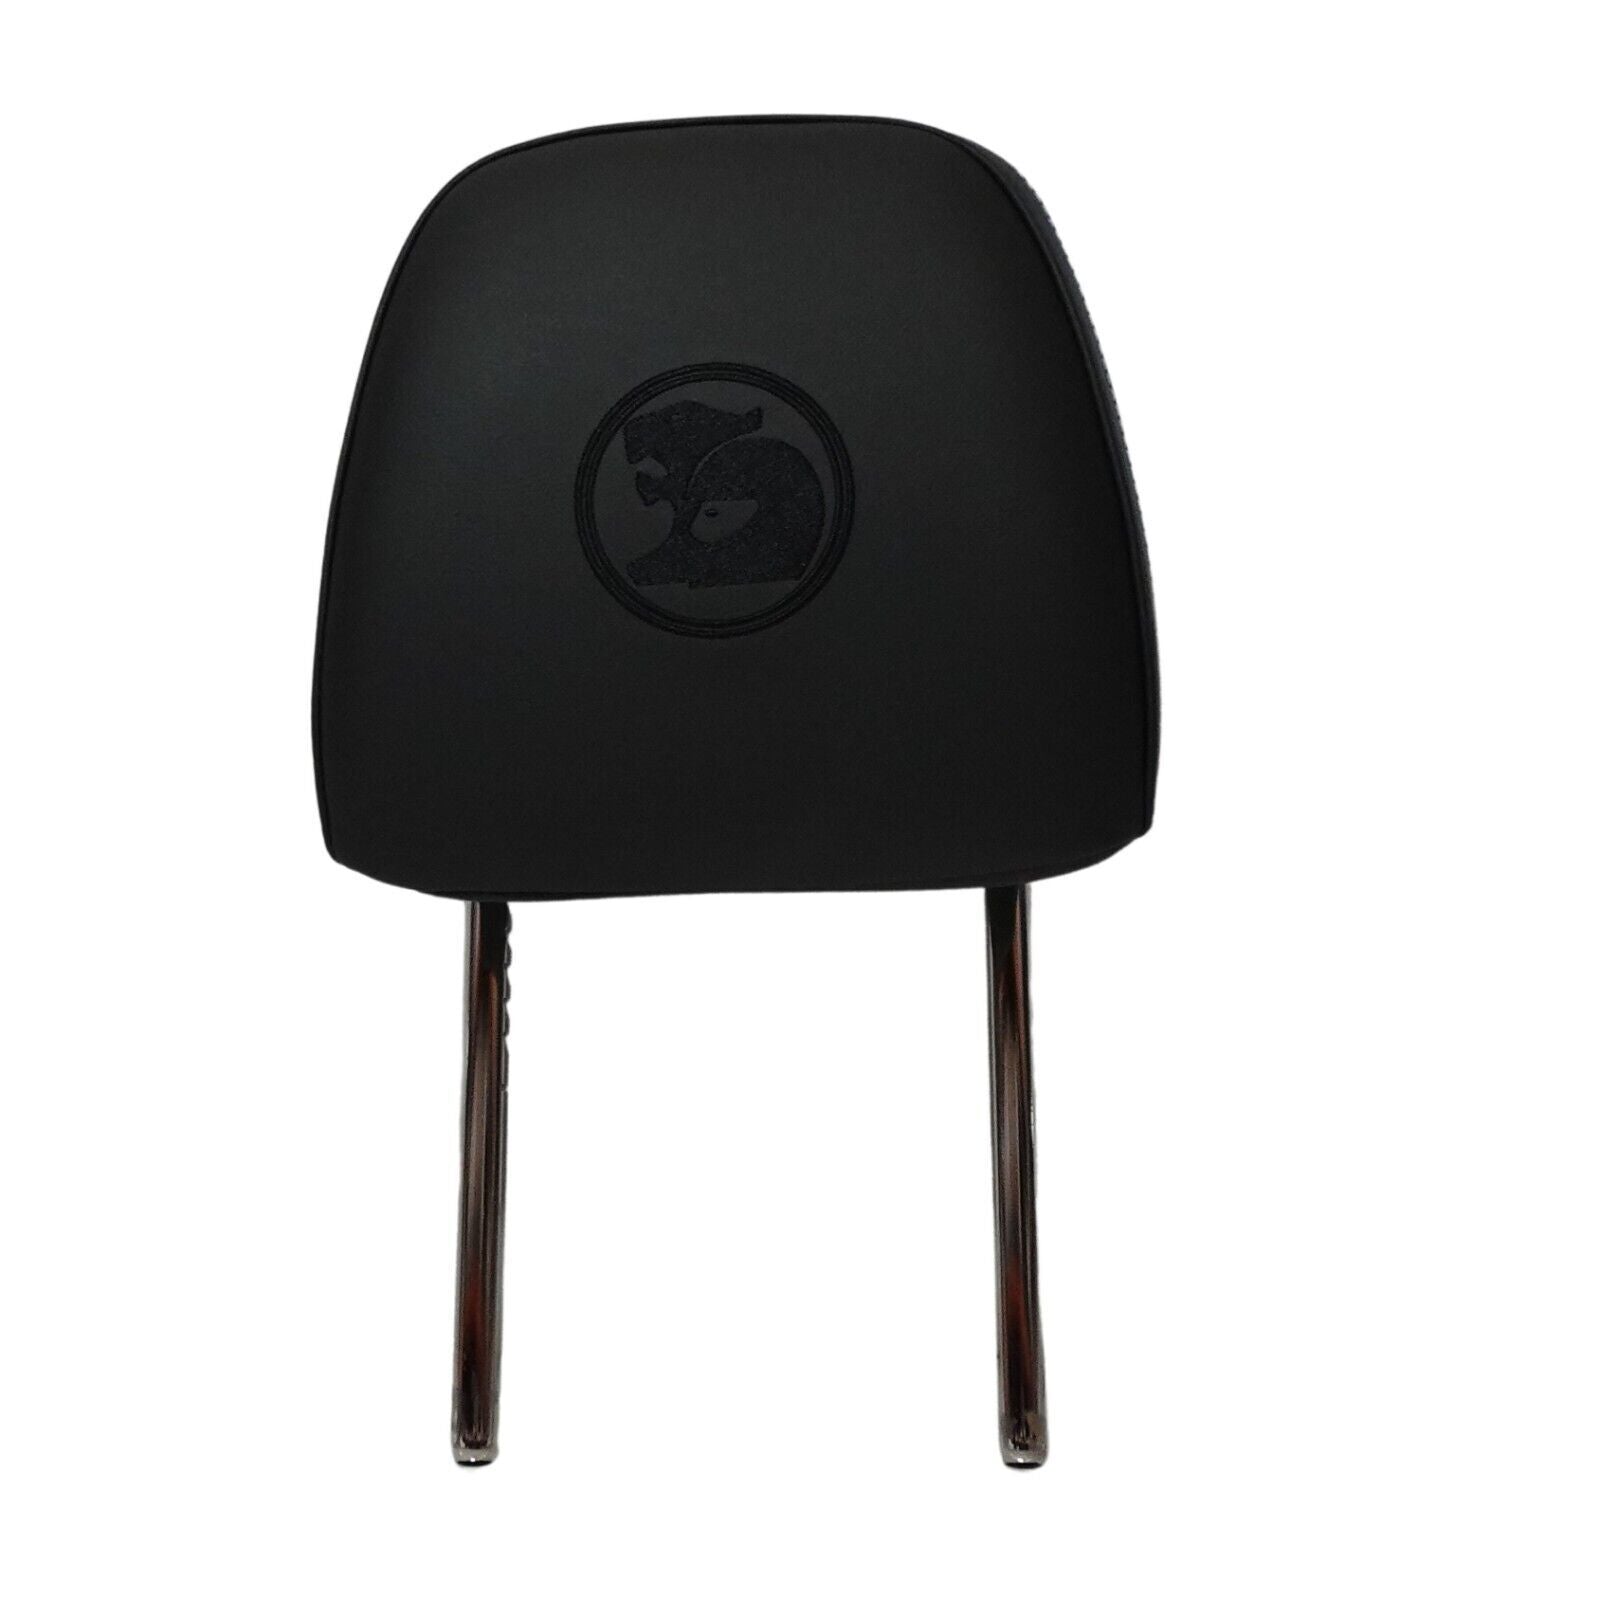 HSV GRANGE FRONT SEAT HEADREST ASSEMBLY P710 # HSV-J06-131301